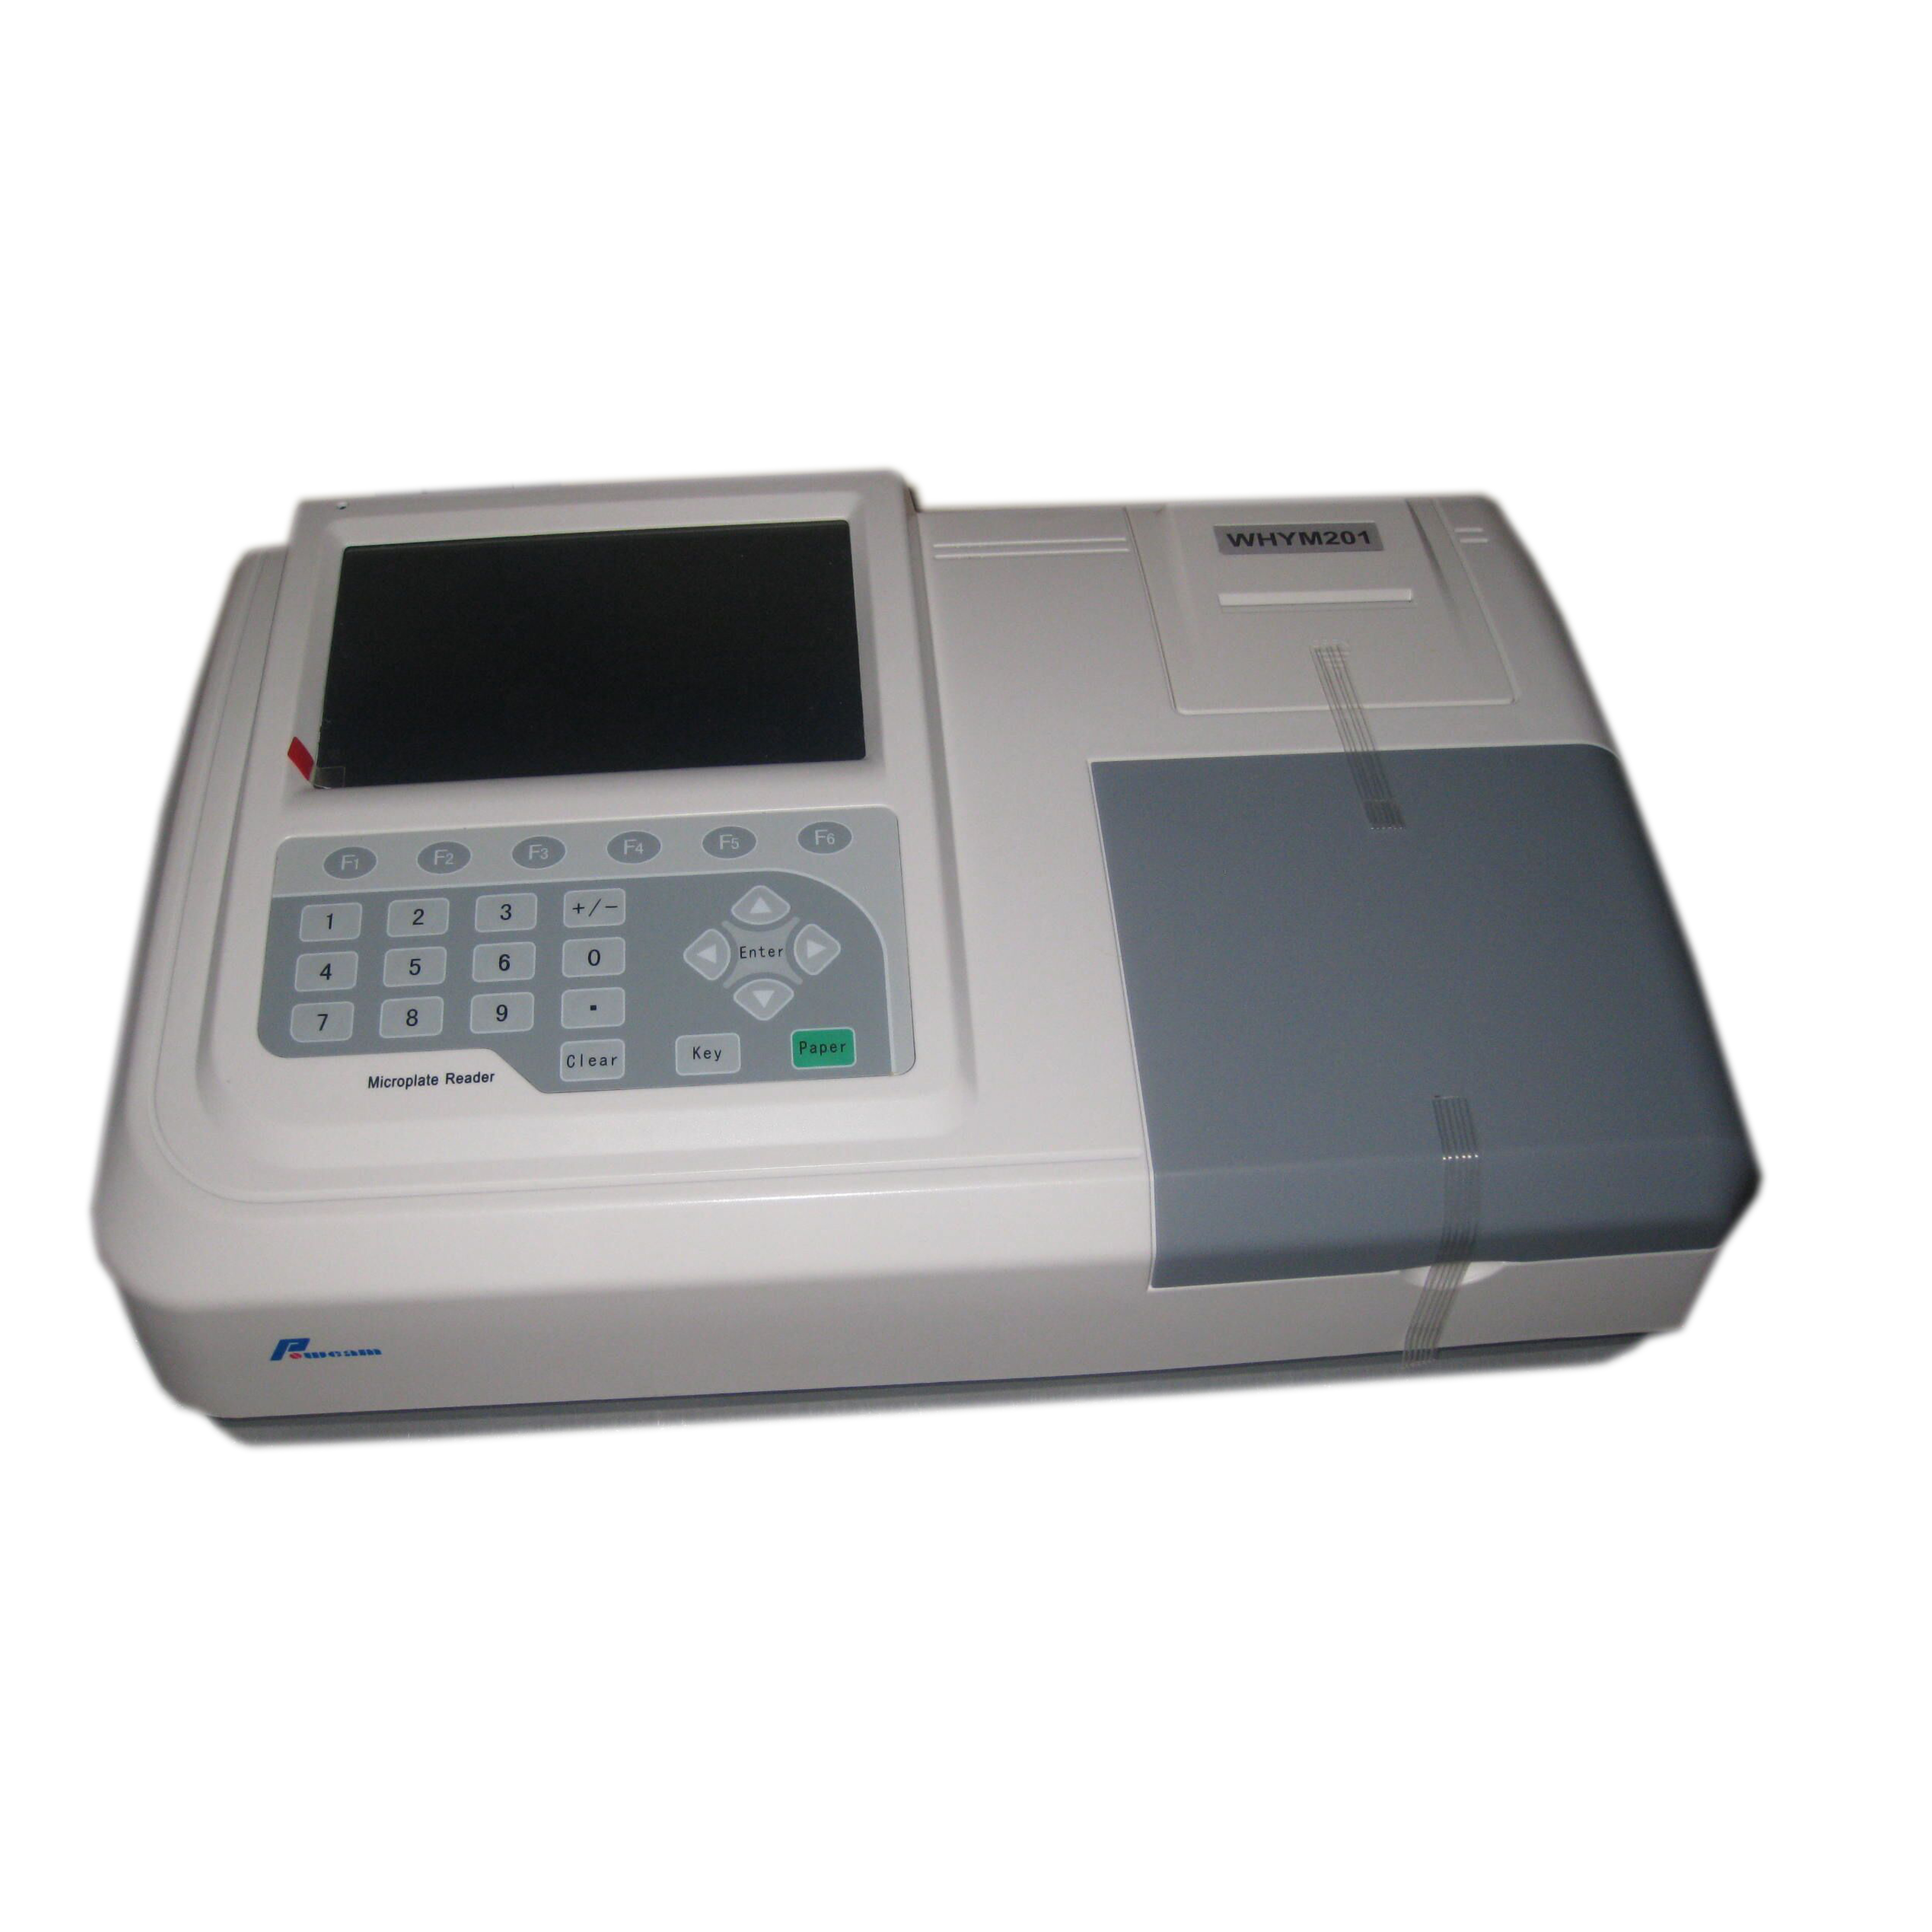 Laborausrüstung ELISA Microplat Reader (Whym201)